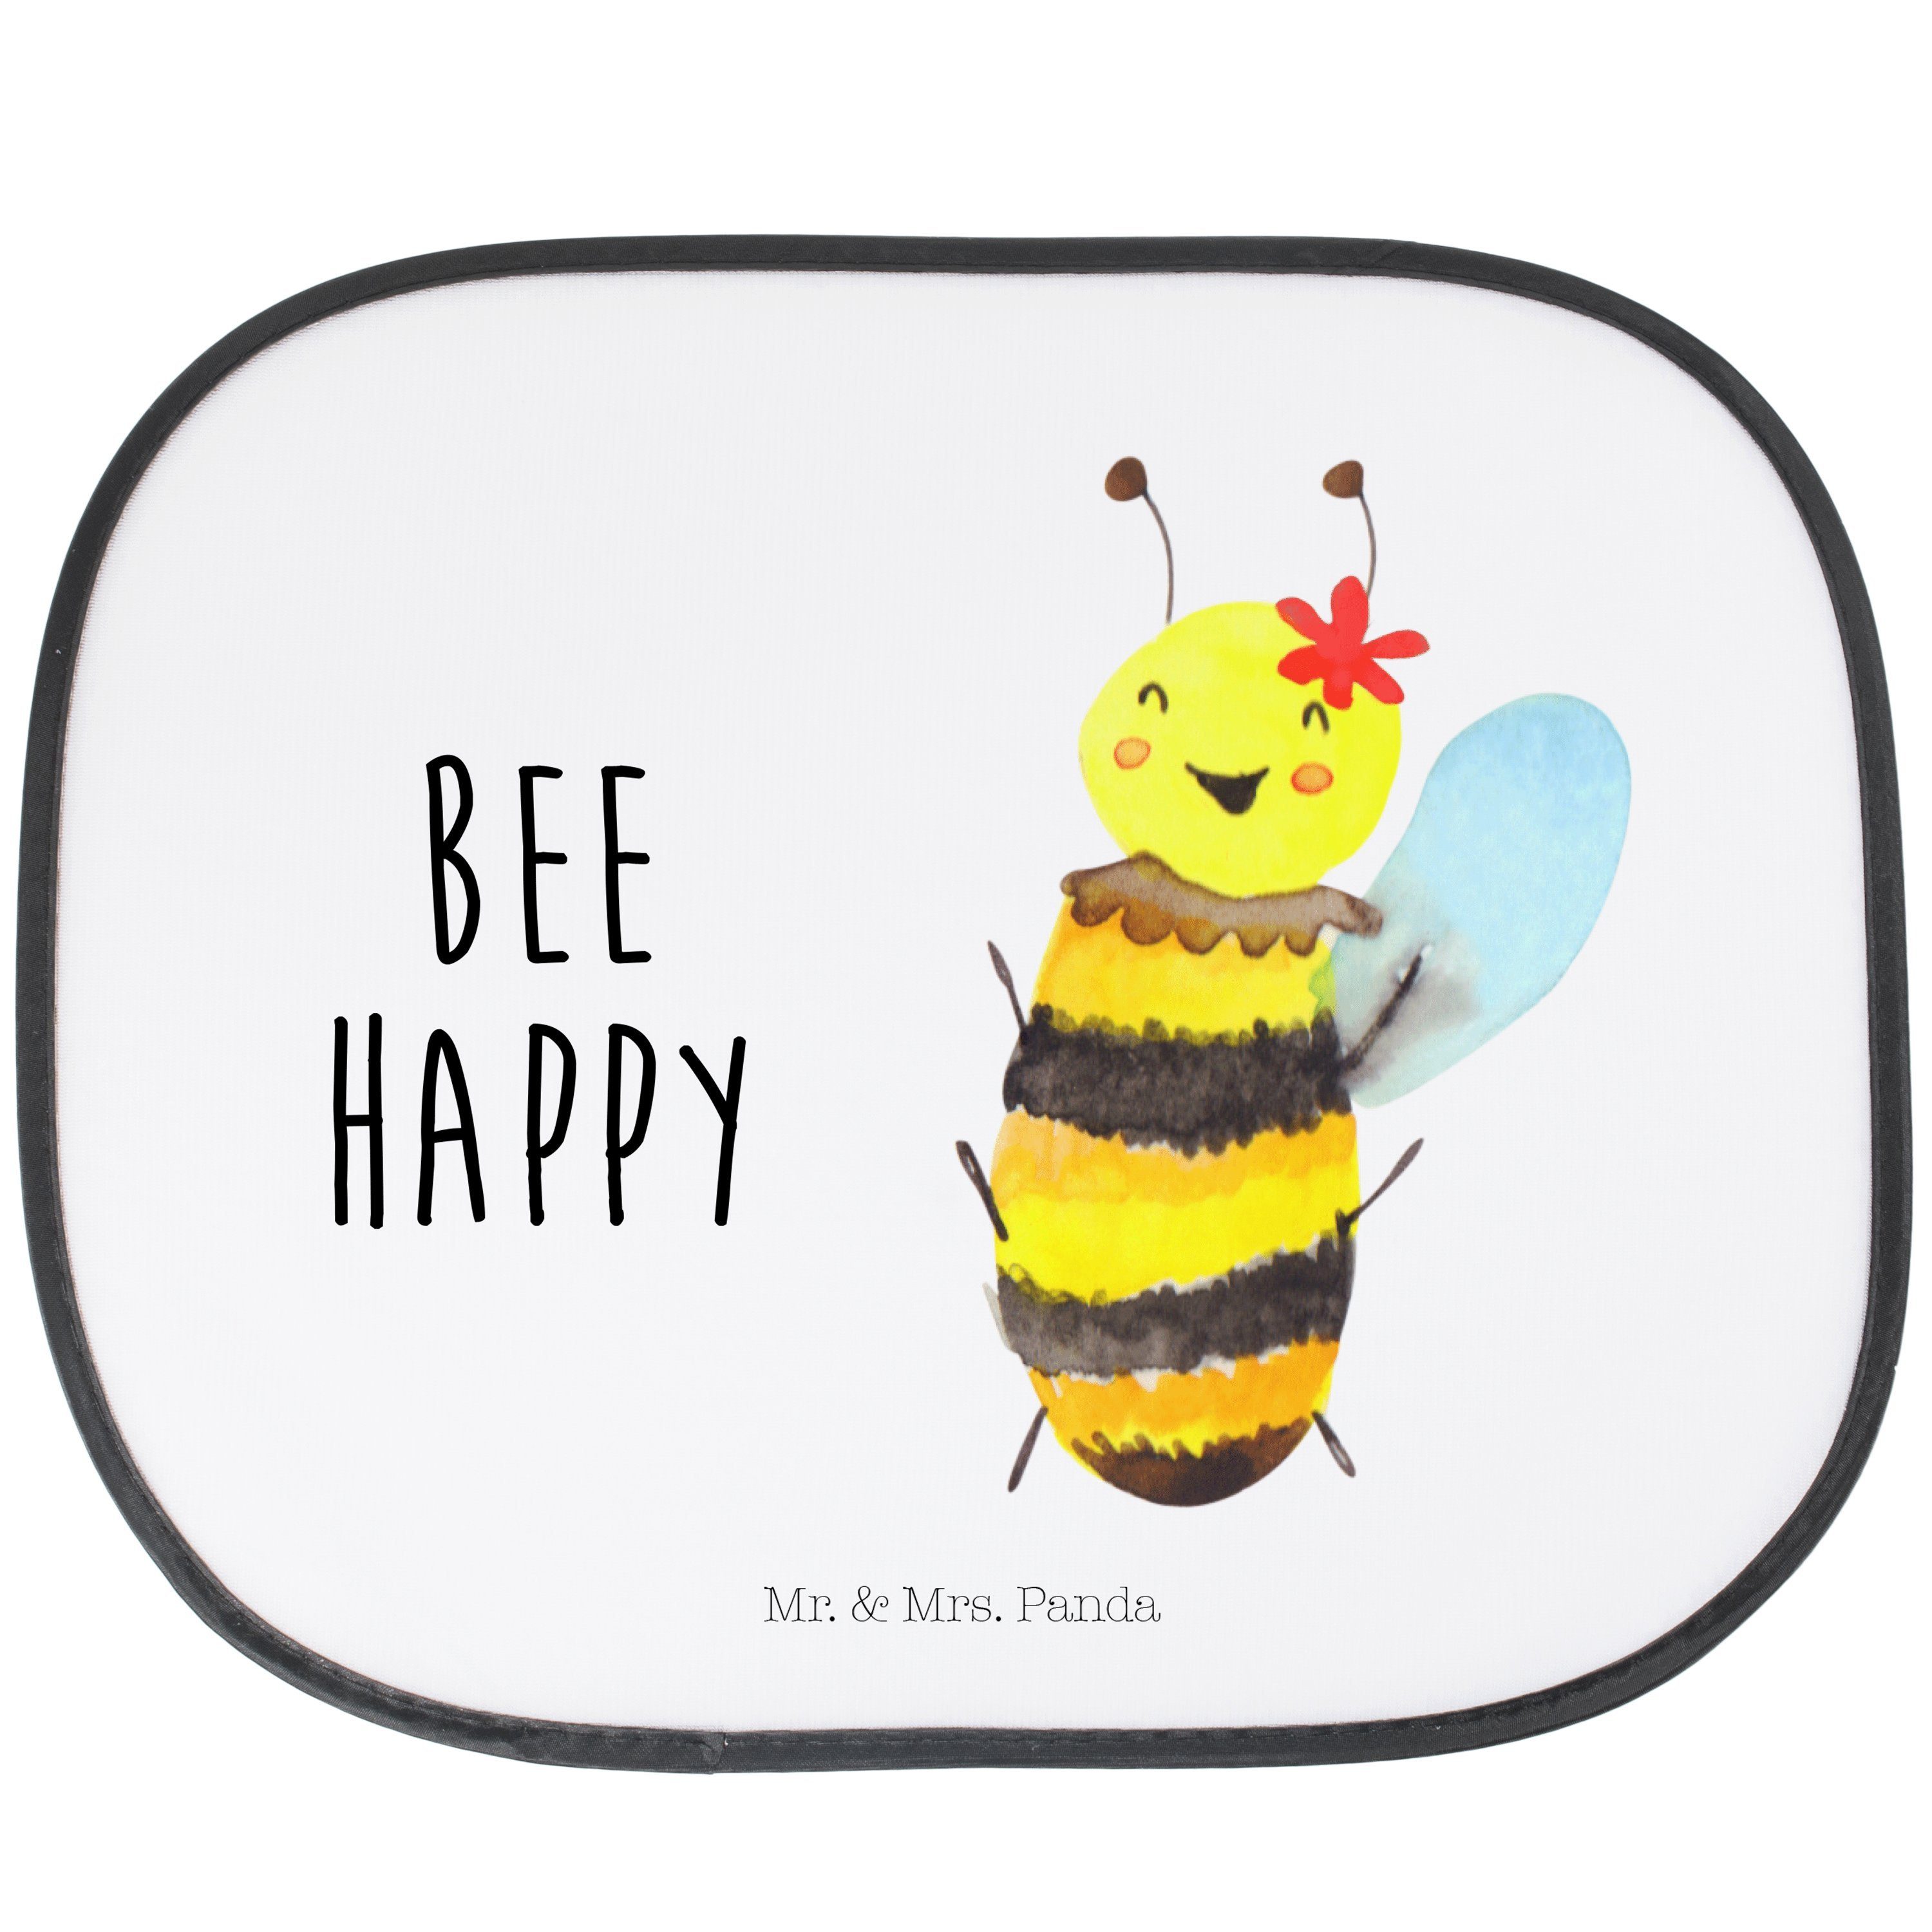 Sonnenschutz Biene Happy - Weiß - Geschenk, Hummel, Sonnenschutz Baby, Auto Sonnen, Mr. & Mrs. Panda, Seidenmatt